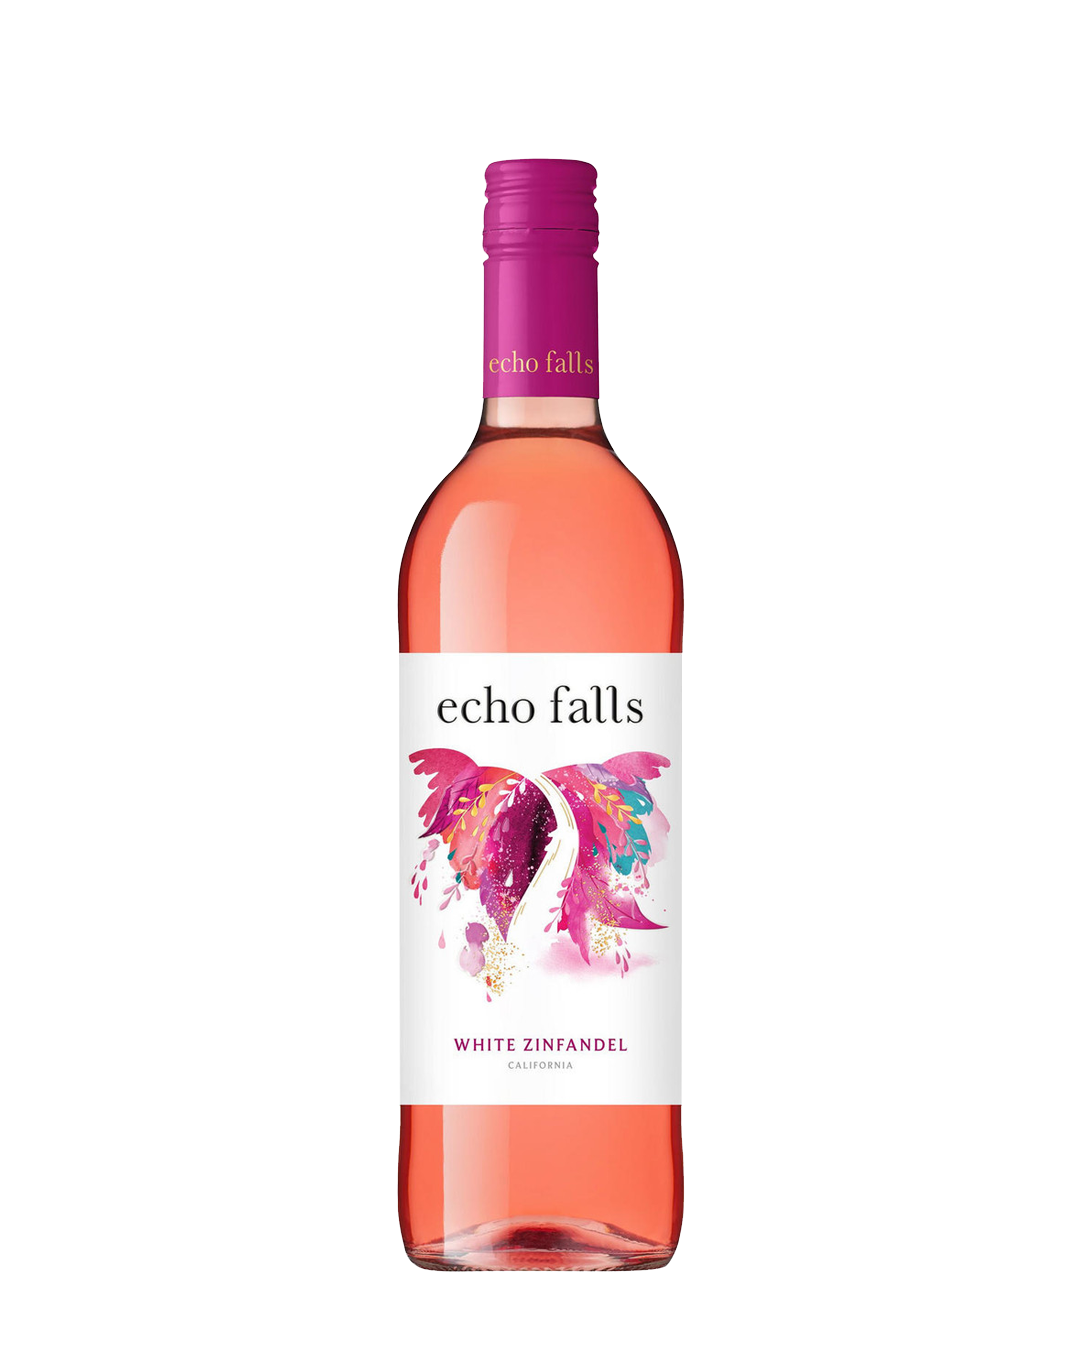 Echo_falls-_white_zinfandel_wine